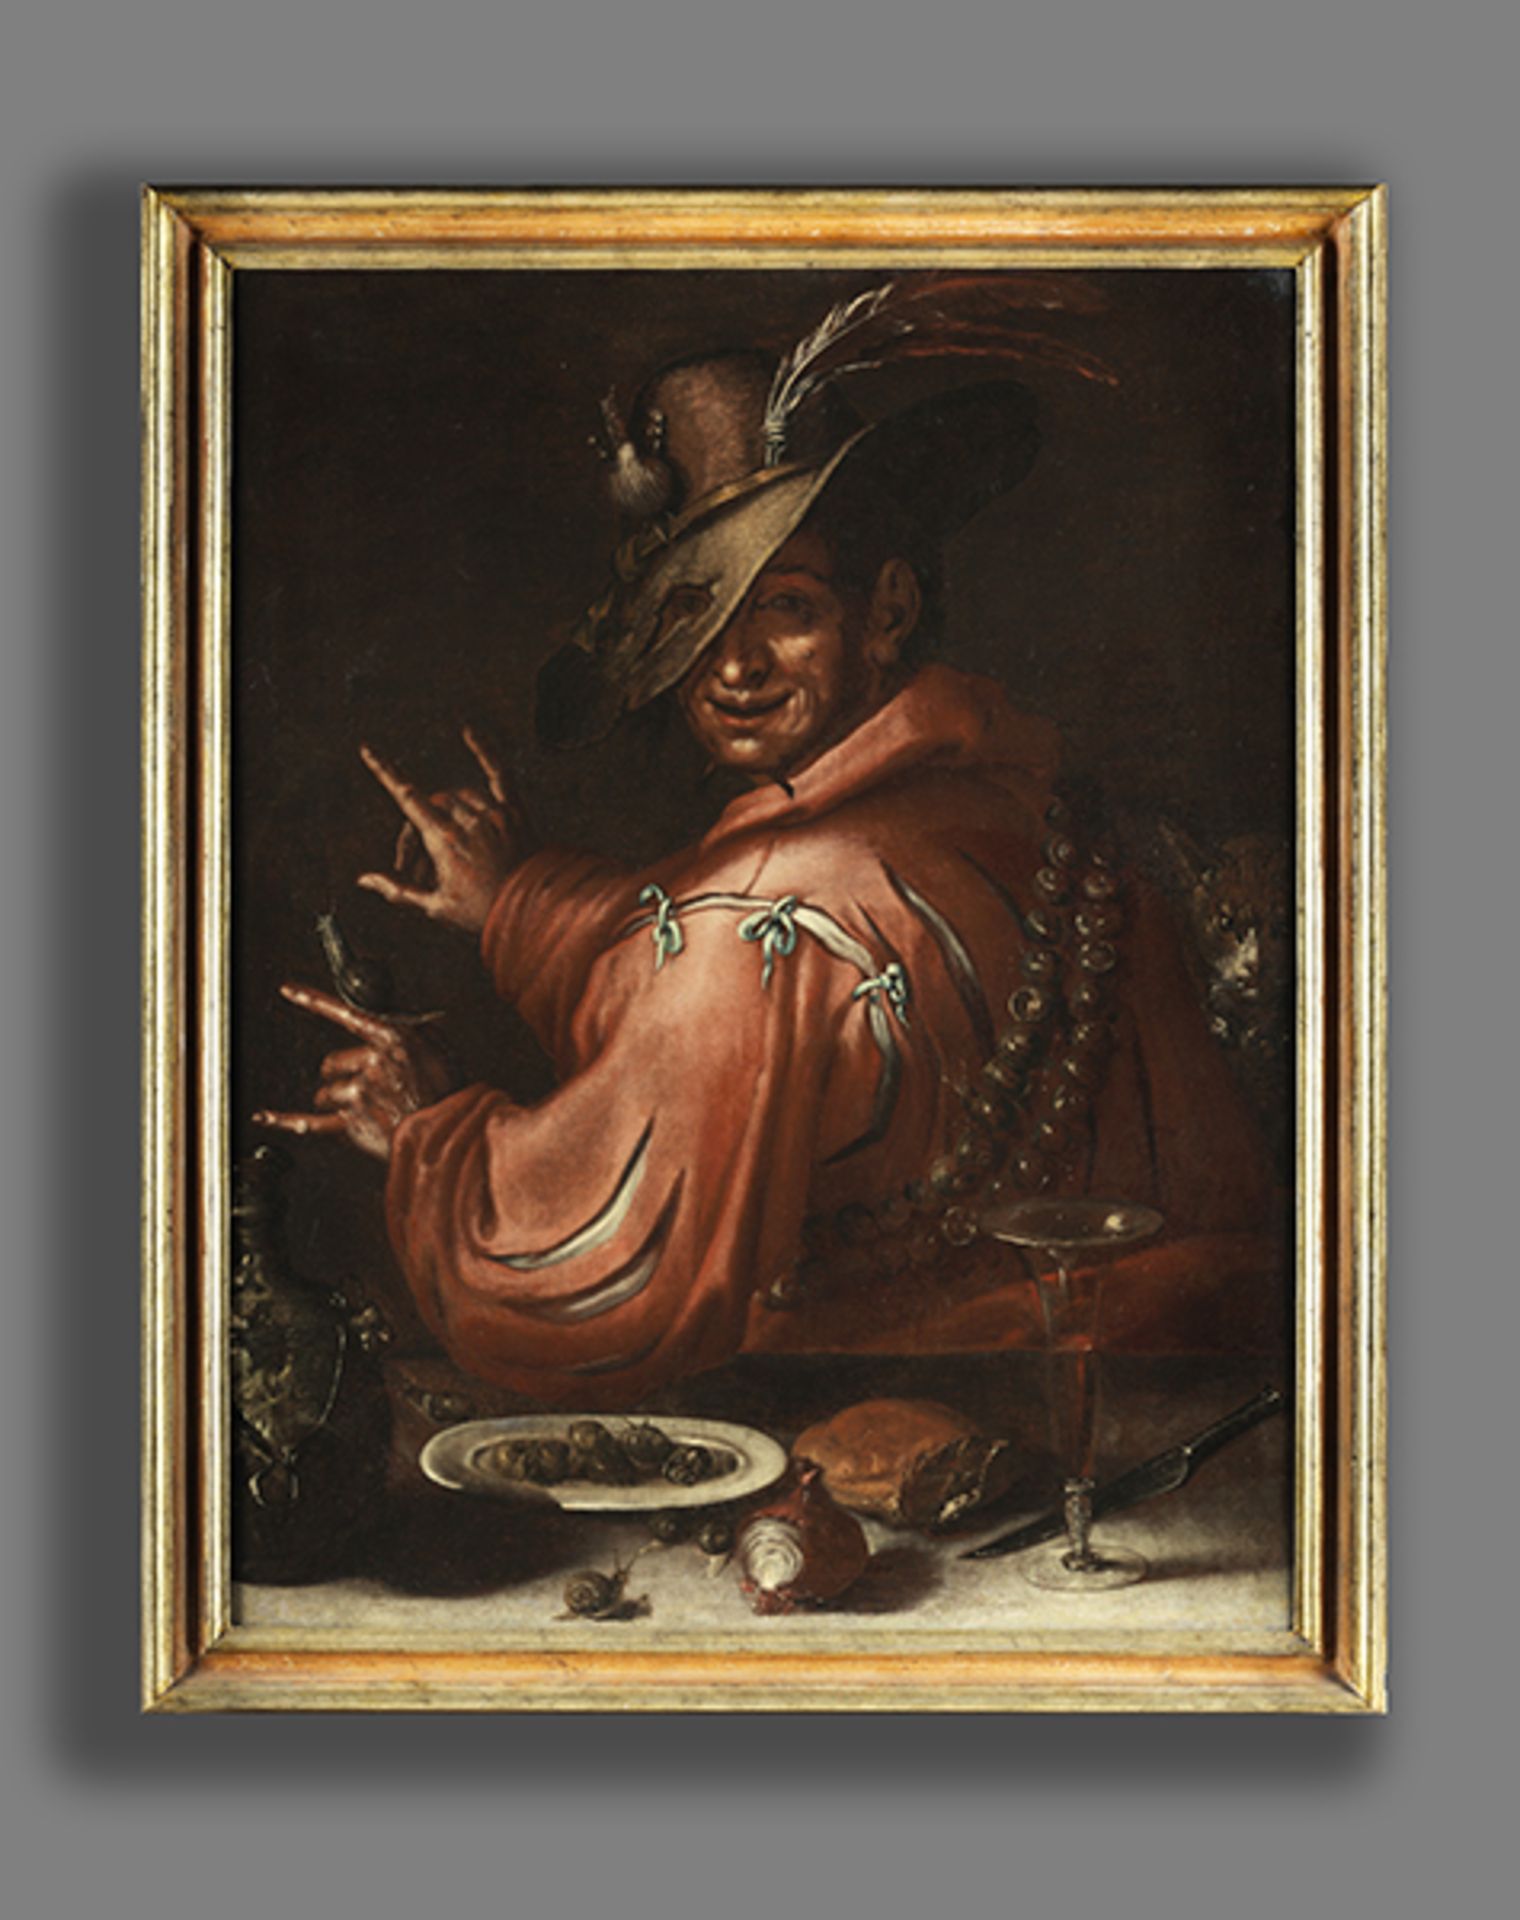 Maler des 17. Jahrhunderts LA BUONA VENTURA (DAS GLÜCK) Öl auf Leinwand. Doubliert. 95 x 75 cm. - Bild 5 aus 6